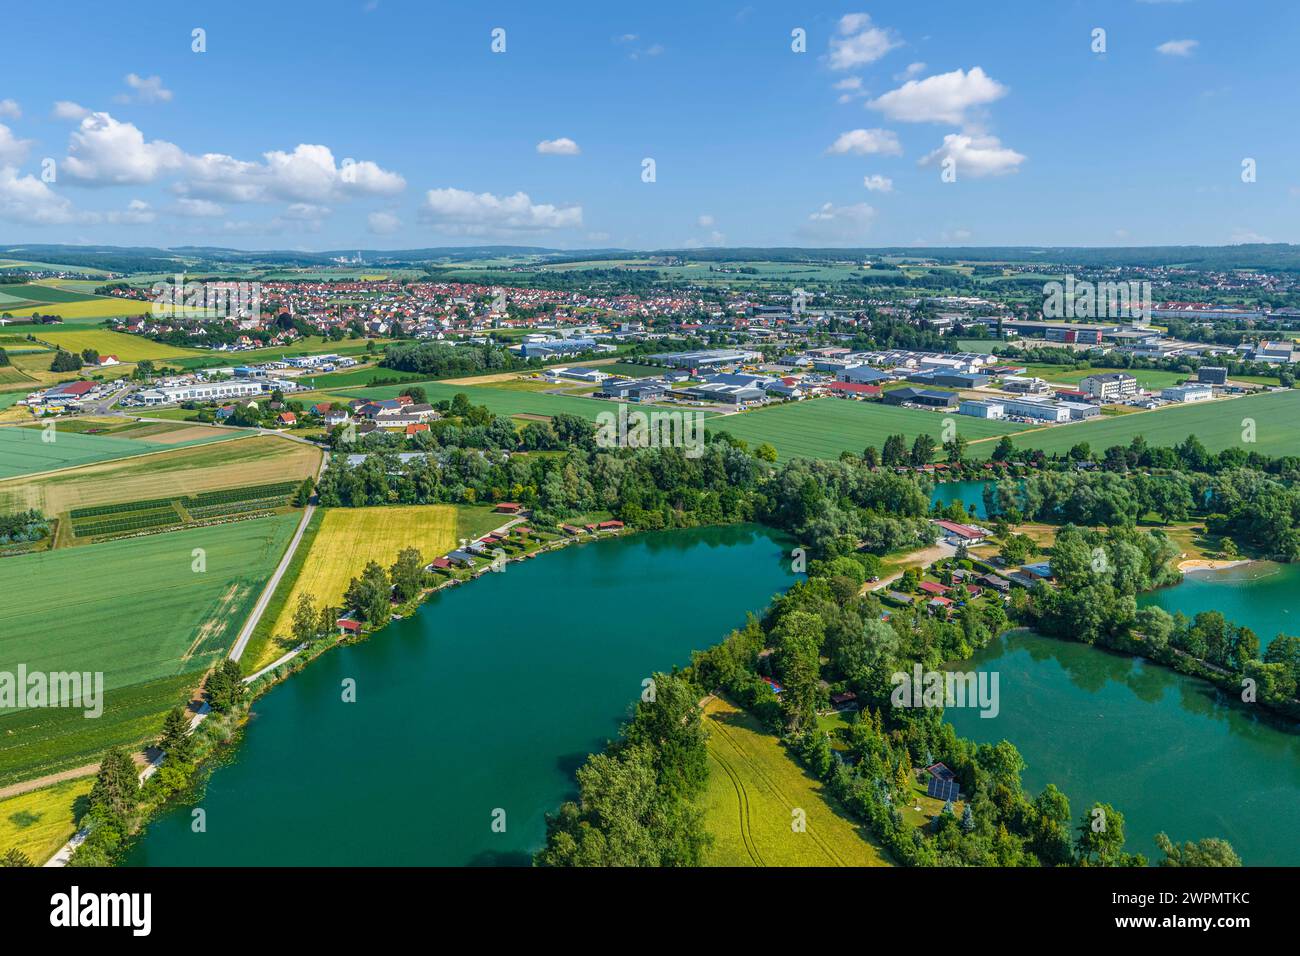 DAS Naherholungsgebiet Baggersee an der Donau in Donauwörth im Luftbild Blick auf das Donautal rund um die Riedlinger Baggerseen südlic Donauwörth Rie Banque D'Images